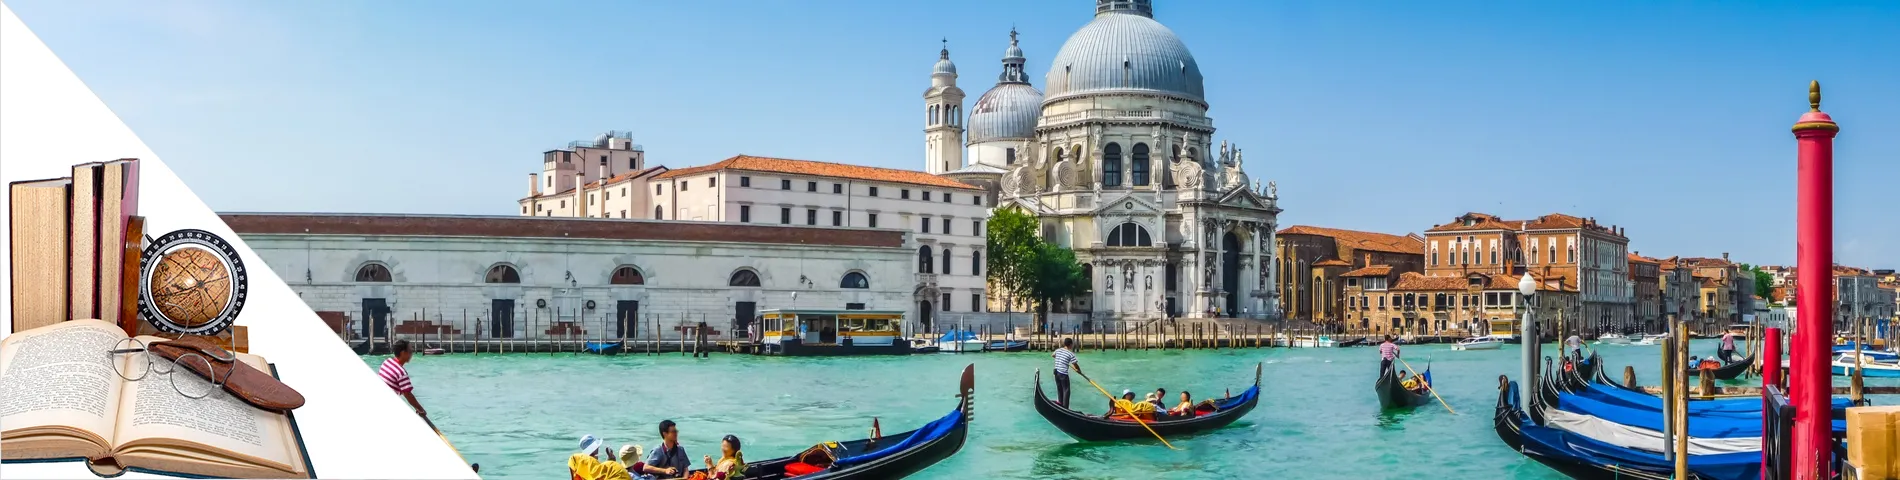 Venecia - Italiano + Arte y Literatura